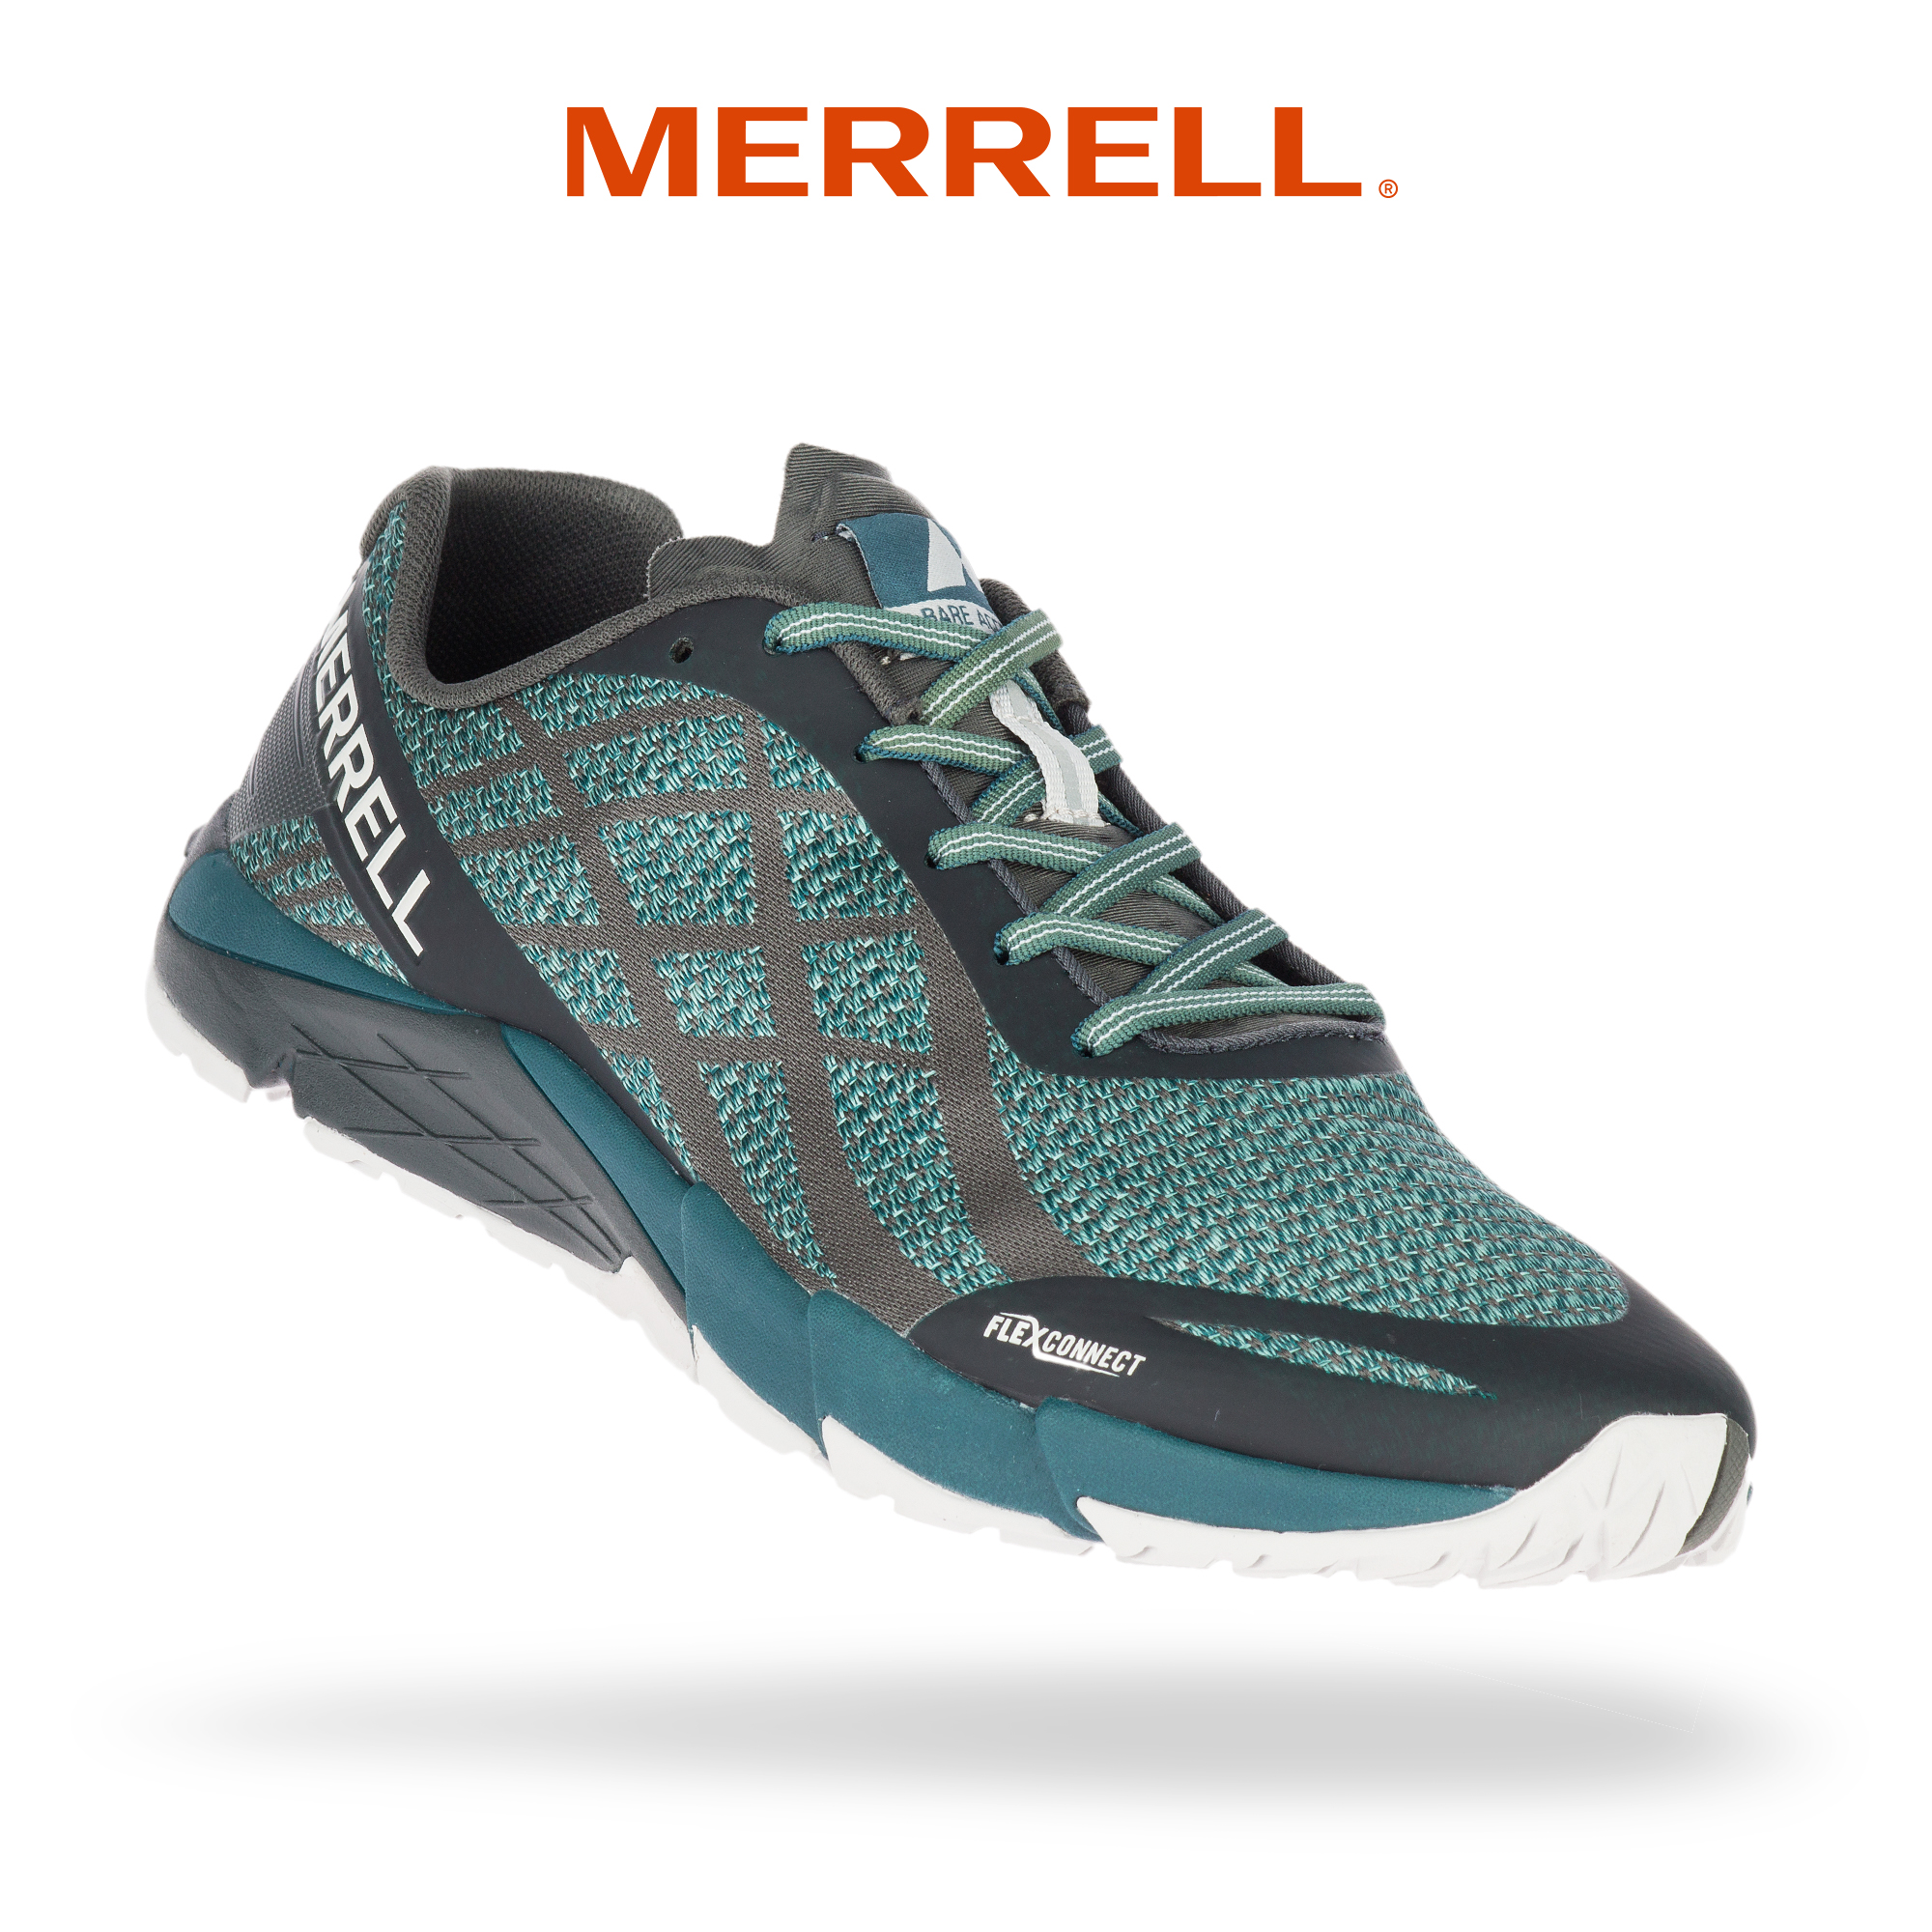 merrell bare access flex trail running shoes